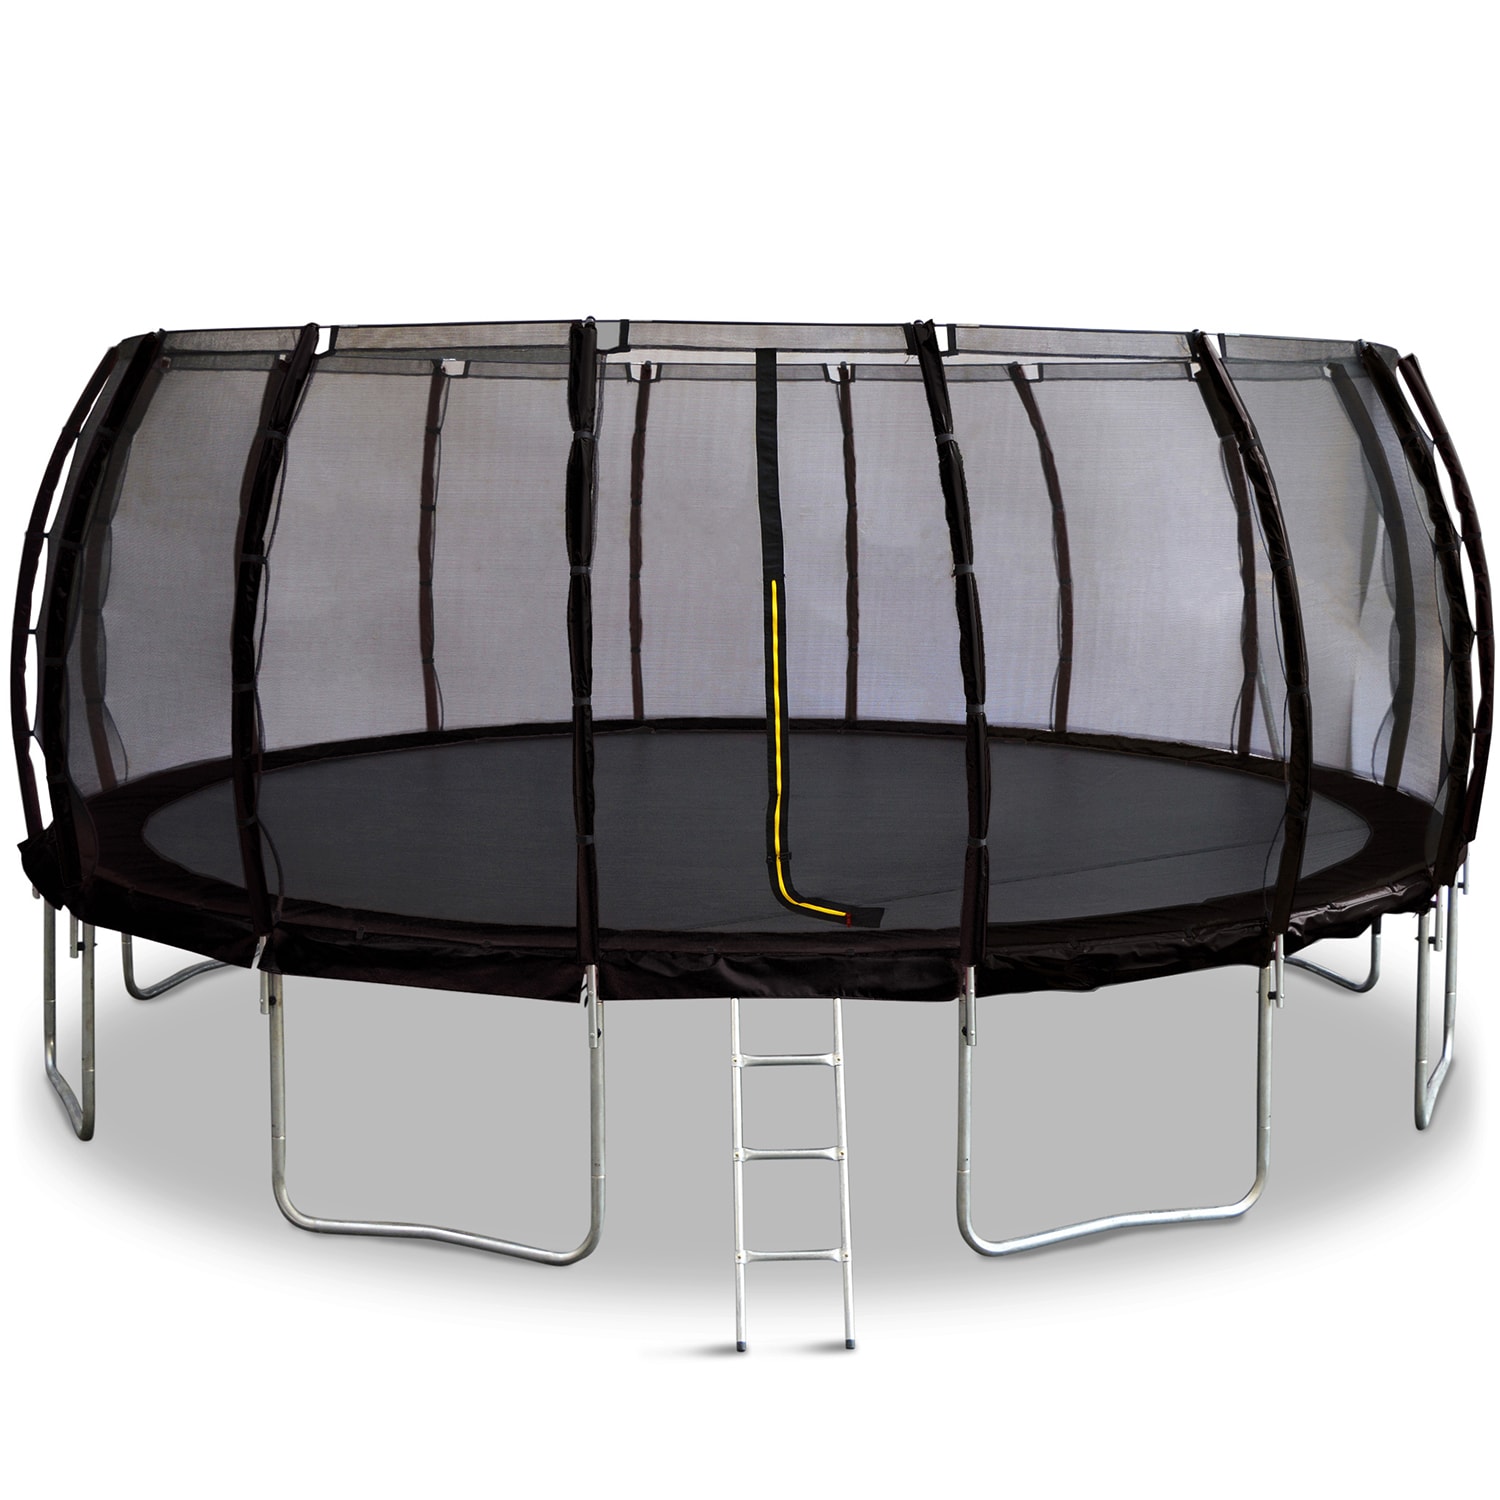 forretning skal Handel Kæmpe trampolin Colosseum 5,5m sort